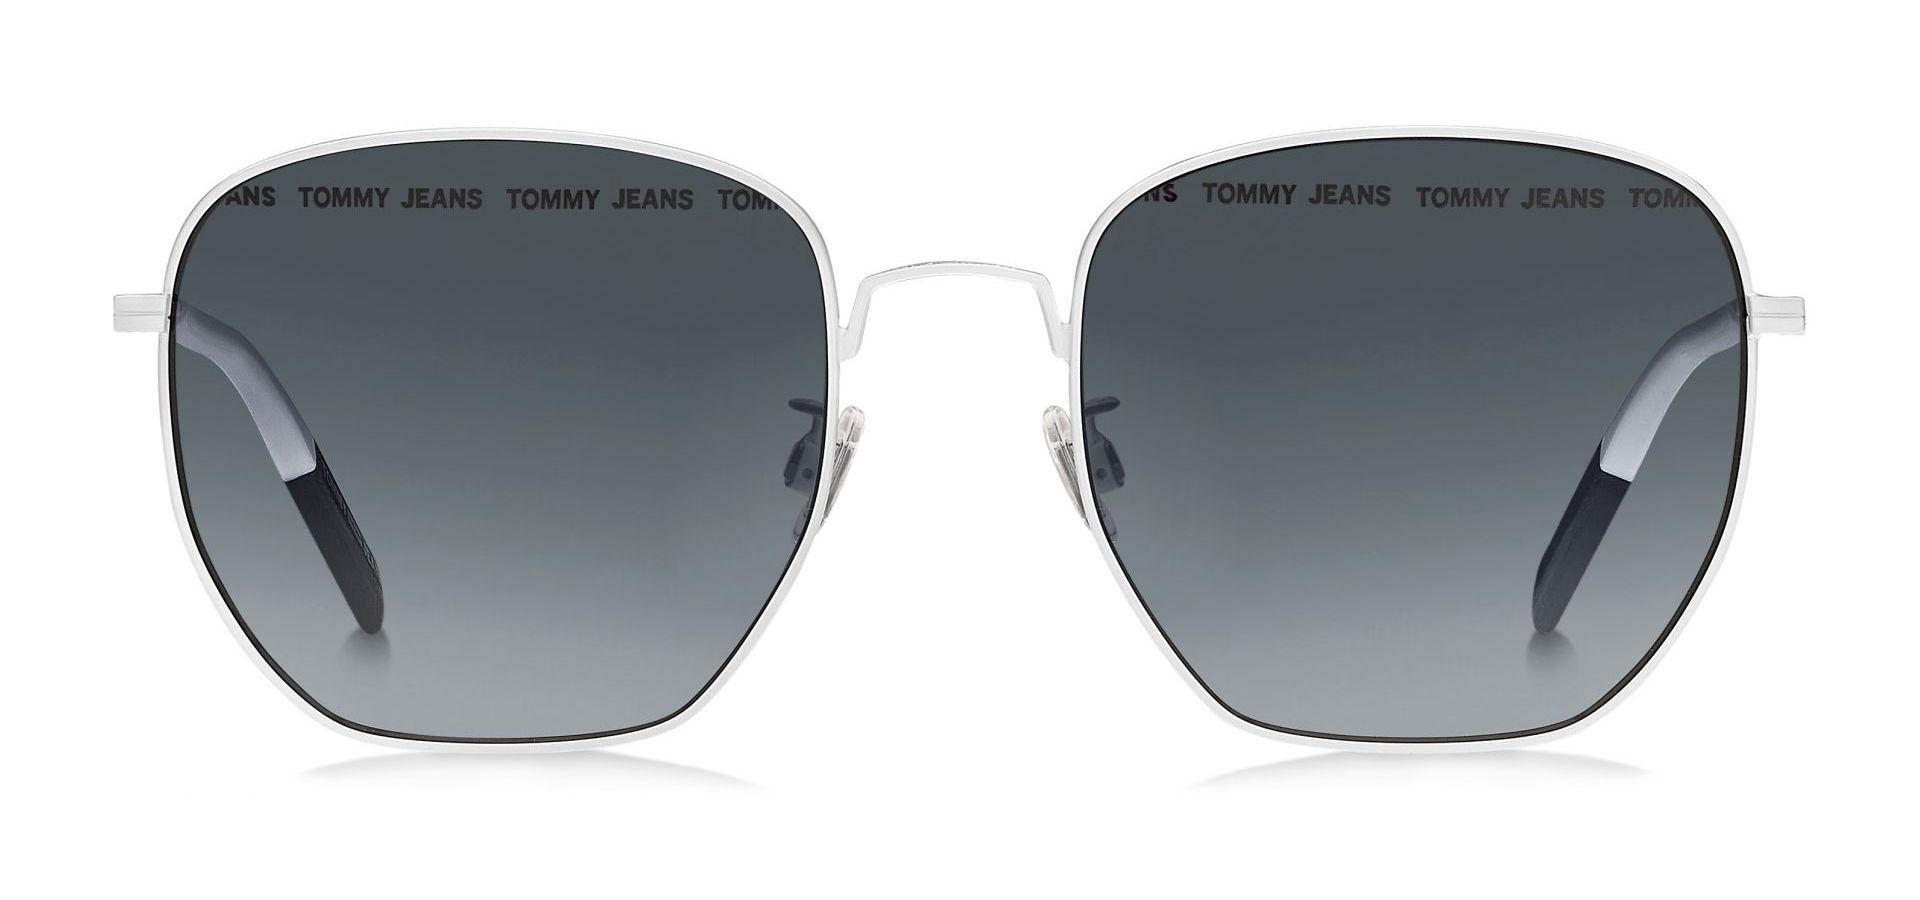 Sunčane naočale TOMMY JEANS TOMMY HILFIGER 0034.: Boja: White, Veličina: 54-14-145, Spol: unisex, Materijal: metal